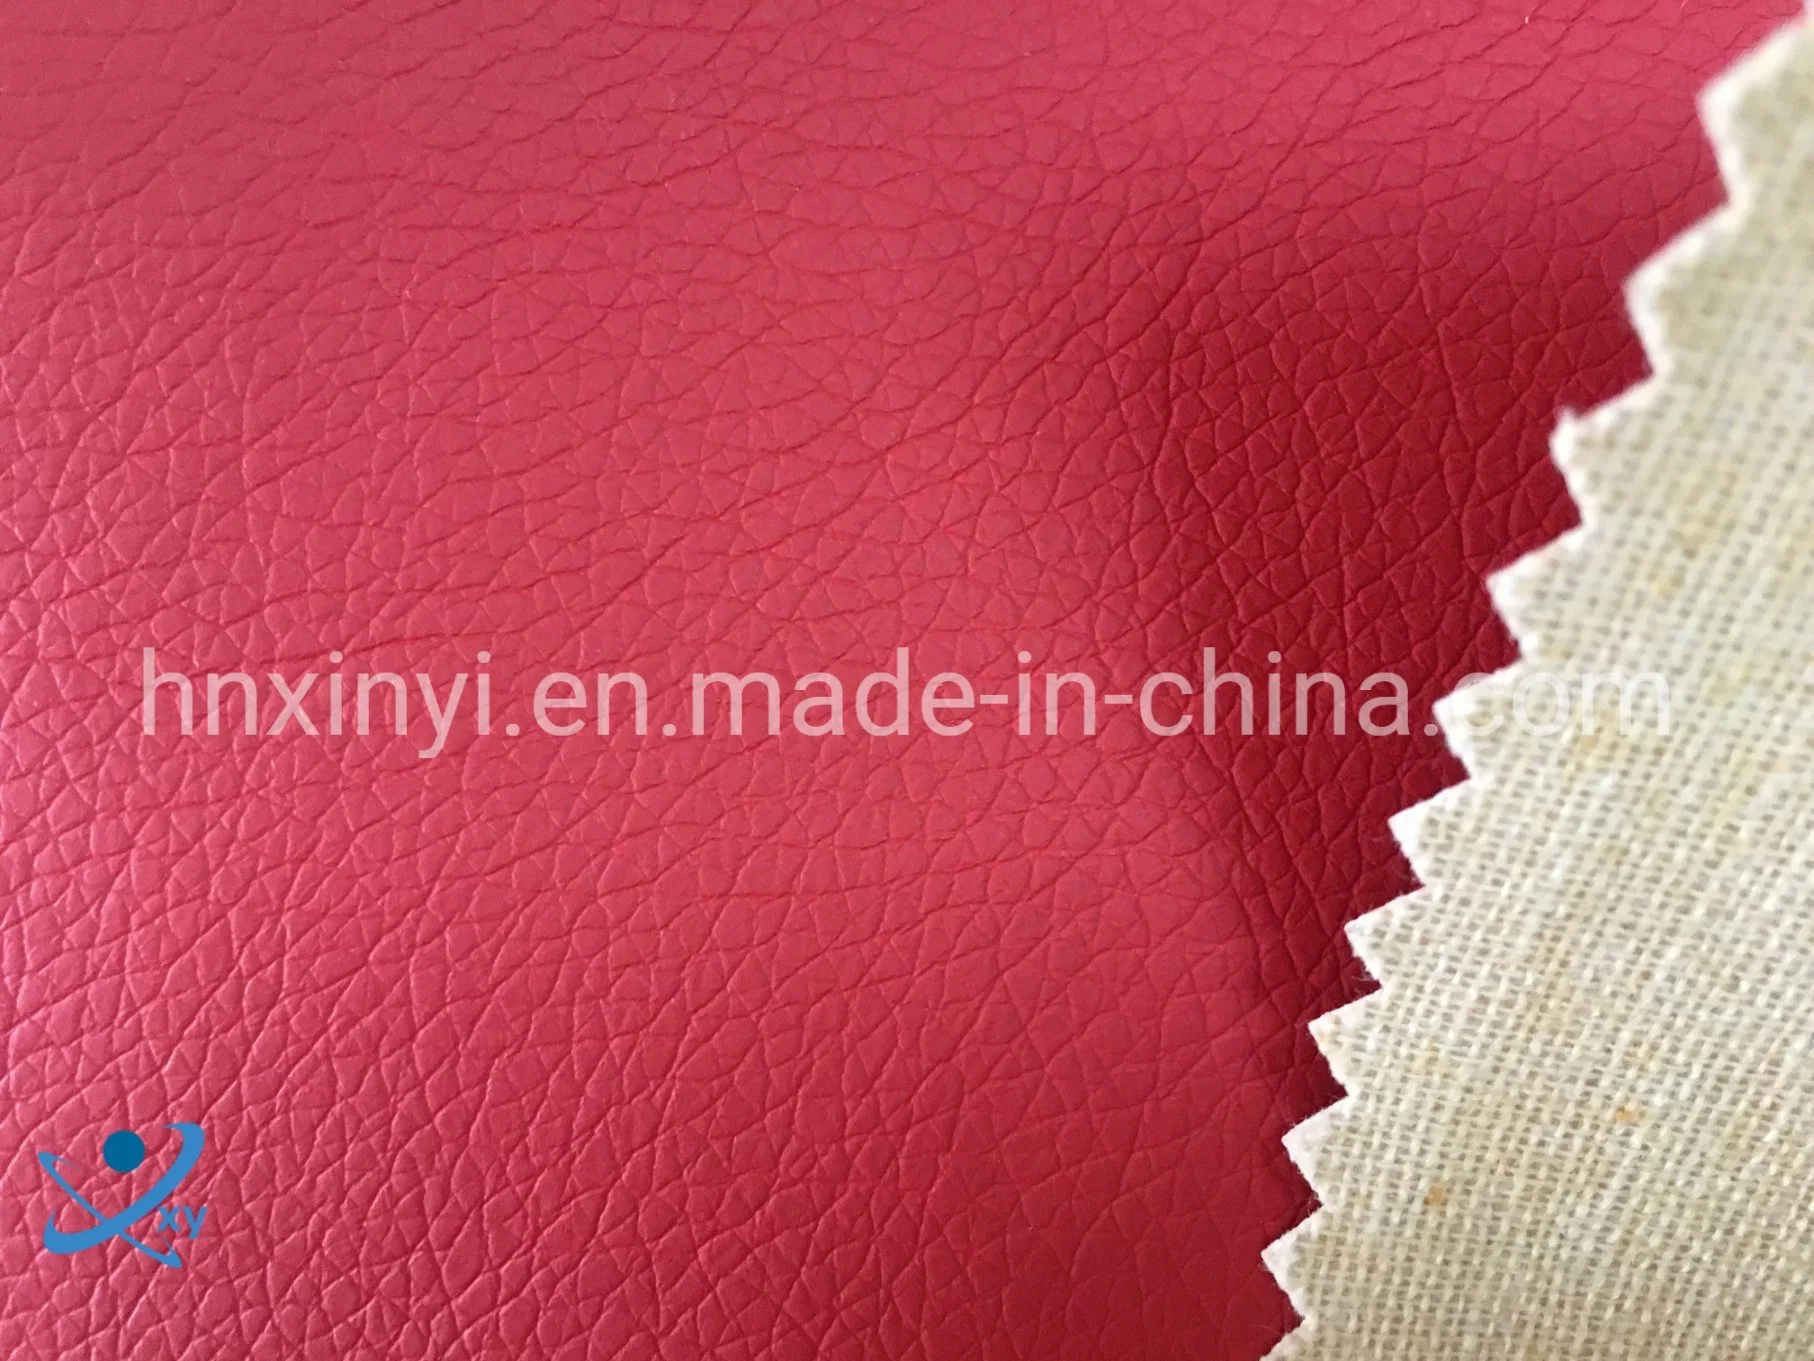 Weit verbreitet Strukturiertes Sofa Leder weich PU Material Synthetisch Künstliche Kunstleder Stoff Textilien Leder für China